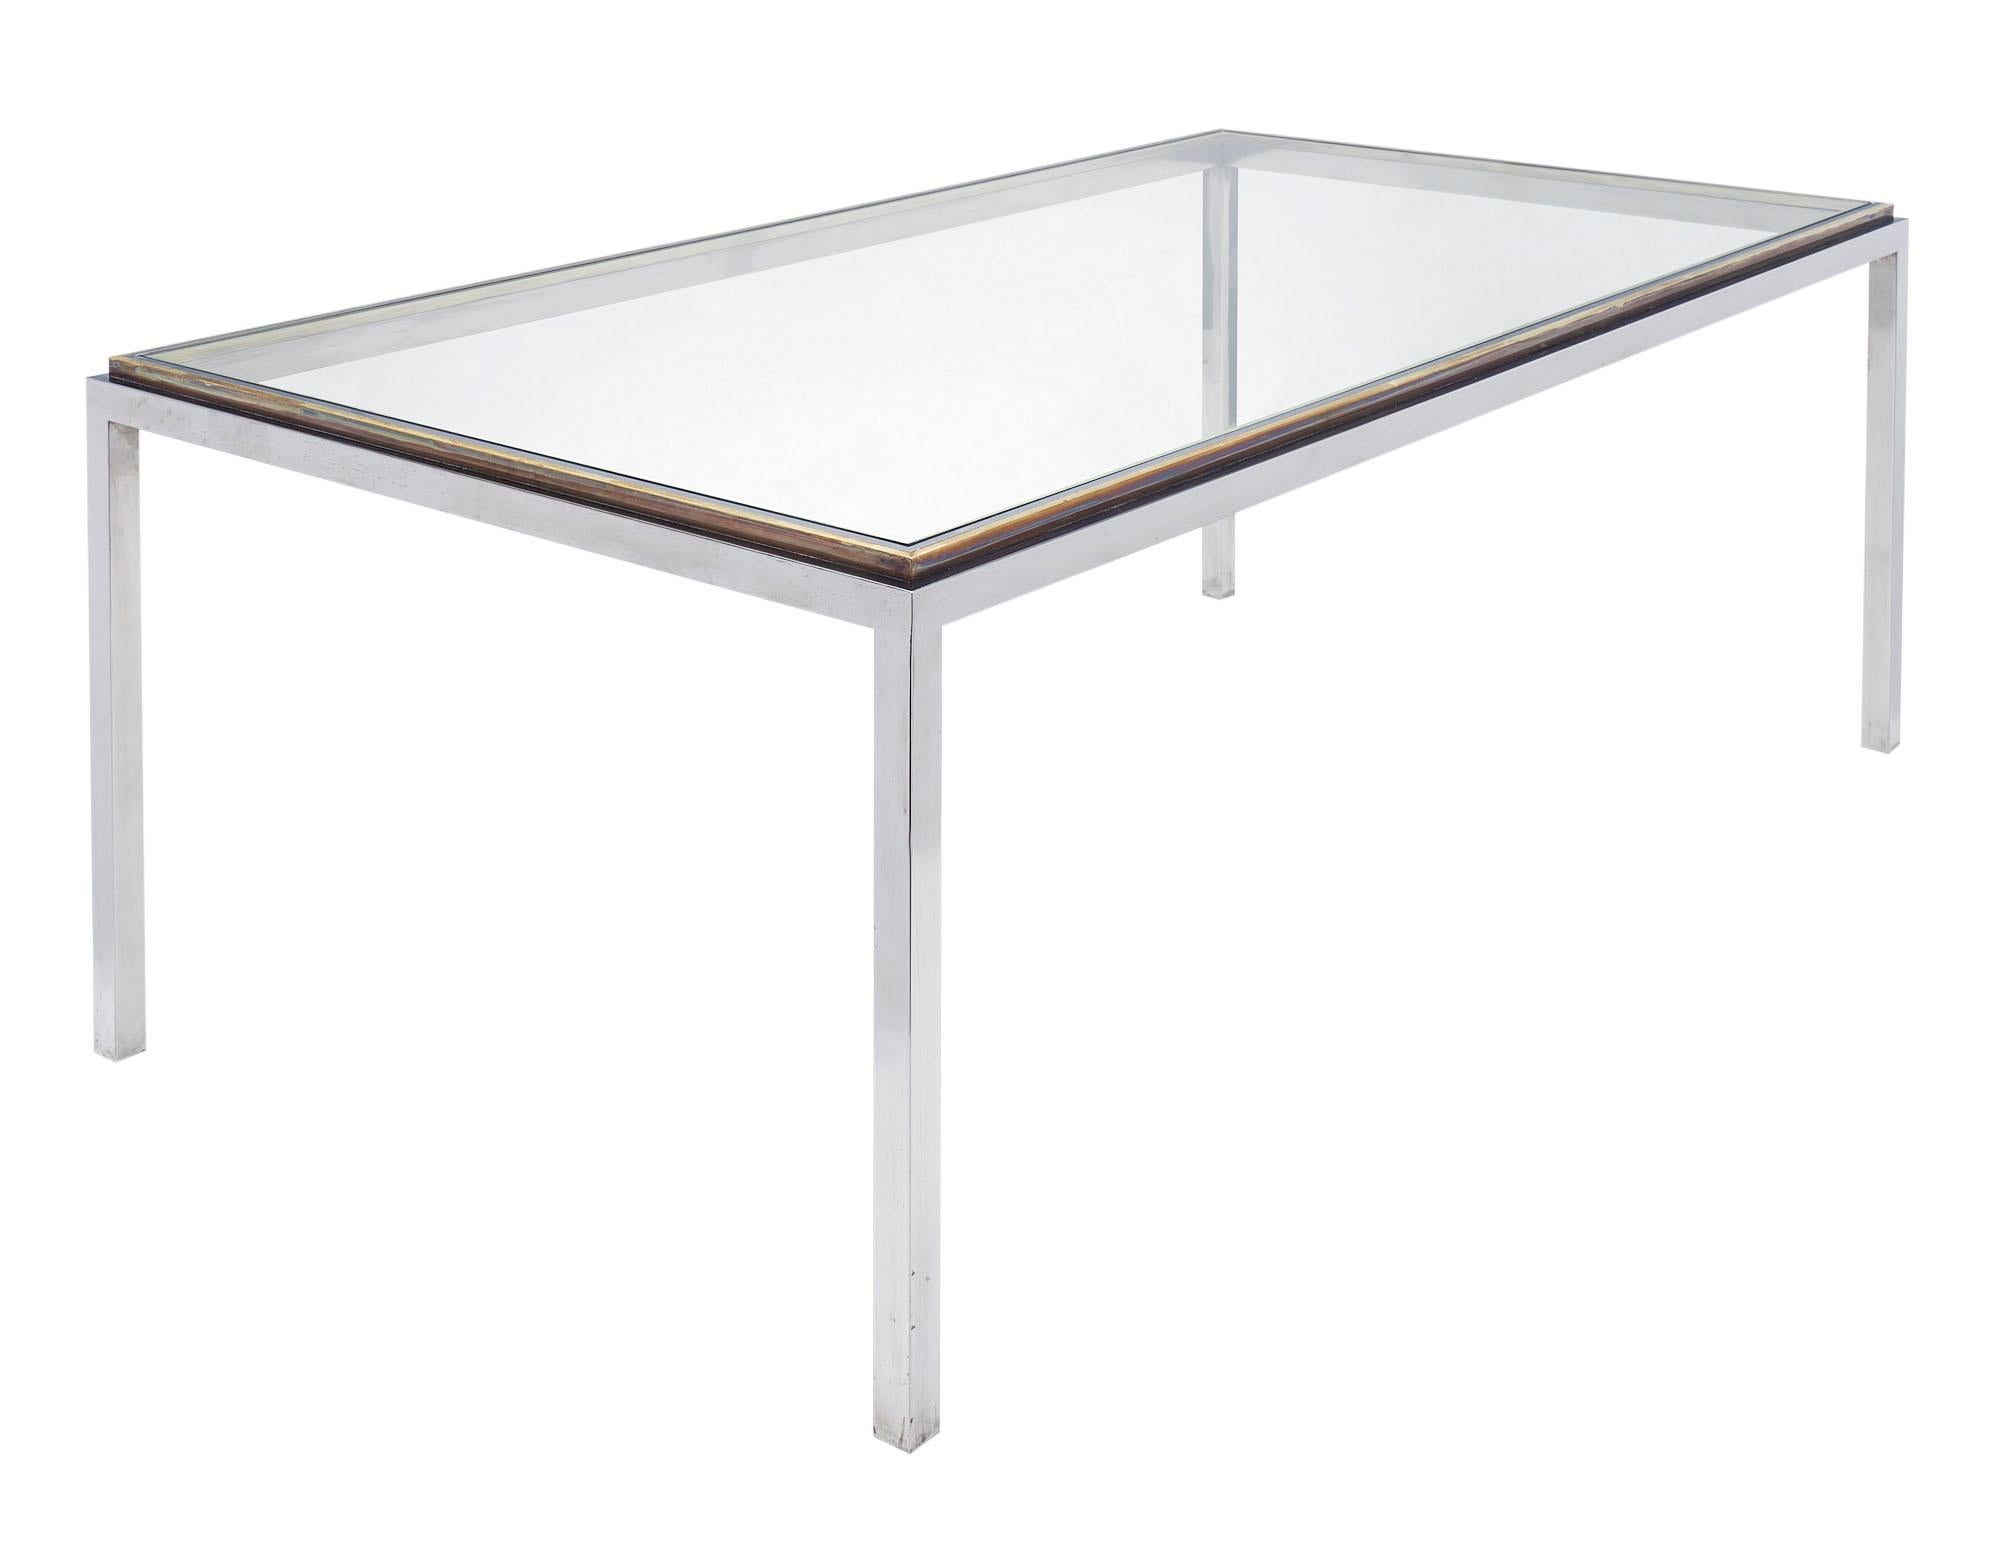 Esszimmereinrichtung aus Italien von Romeo Rega. Dieses Set besteht aus einem Tisch aus Chrom und Messing mit einer Glasplatte. Es gibt vier Stühle aus verchromtem Stahl und zwei Sessel. Die Stühle sind mit den originalen Wildlederbezügen in gutem